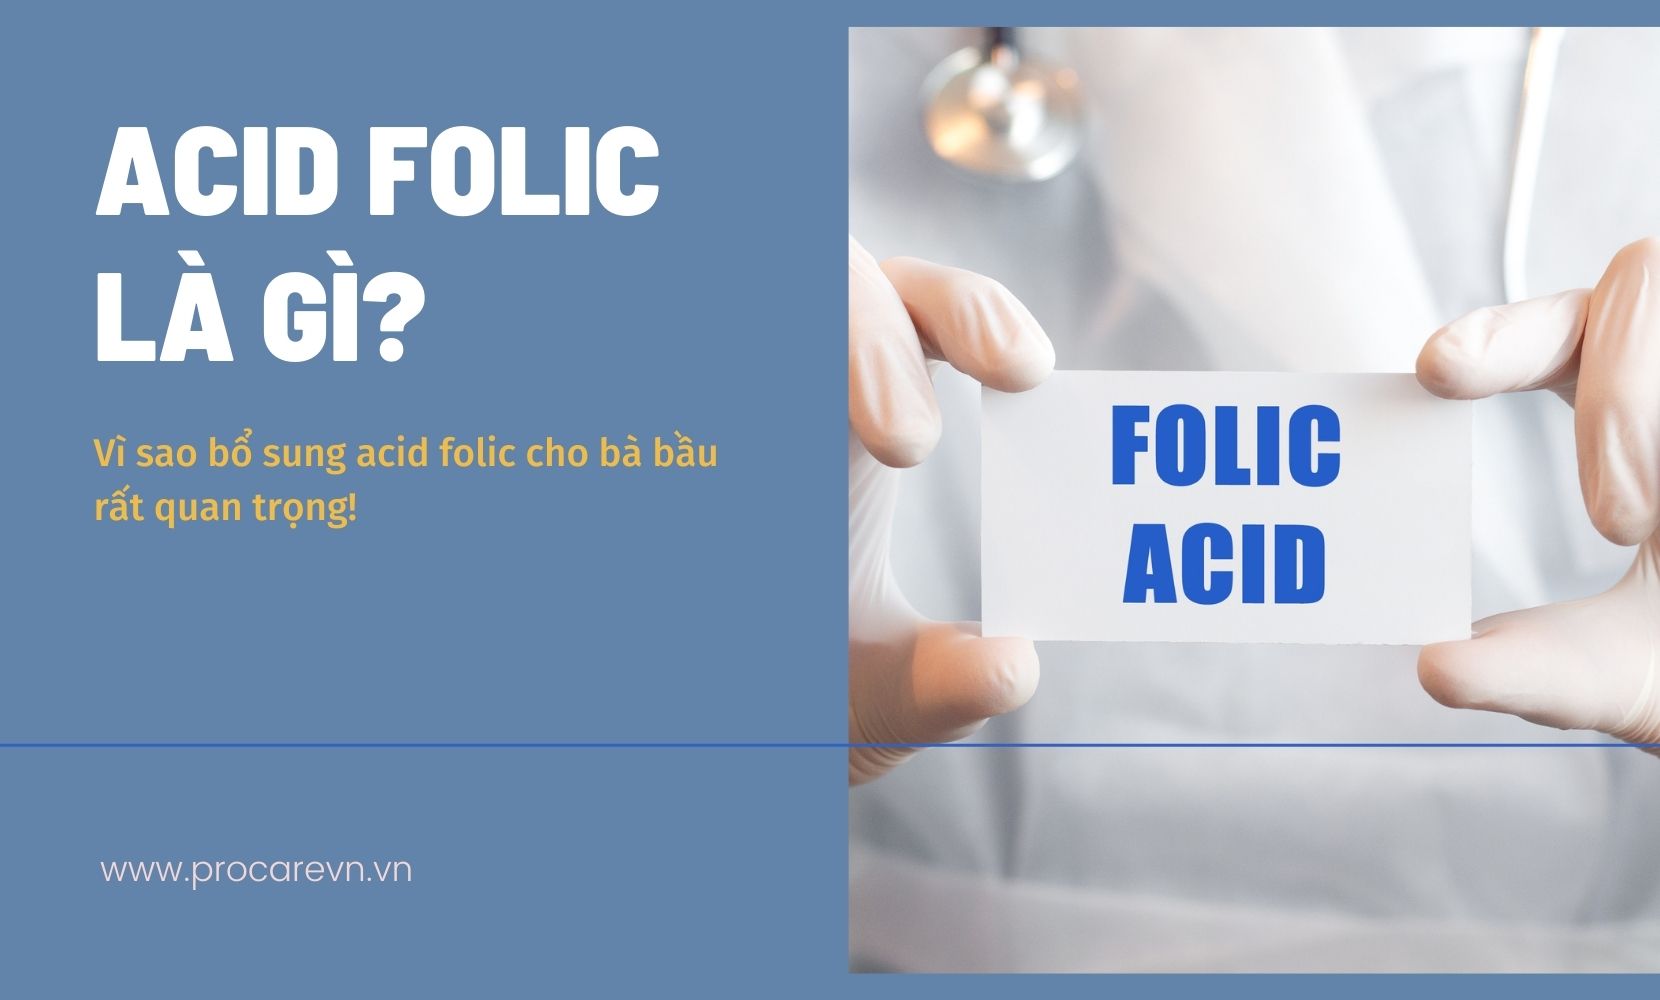 Làm thế nào để bổ sung acid folic vào khẩu phần ăn hàng ngày?
